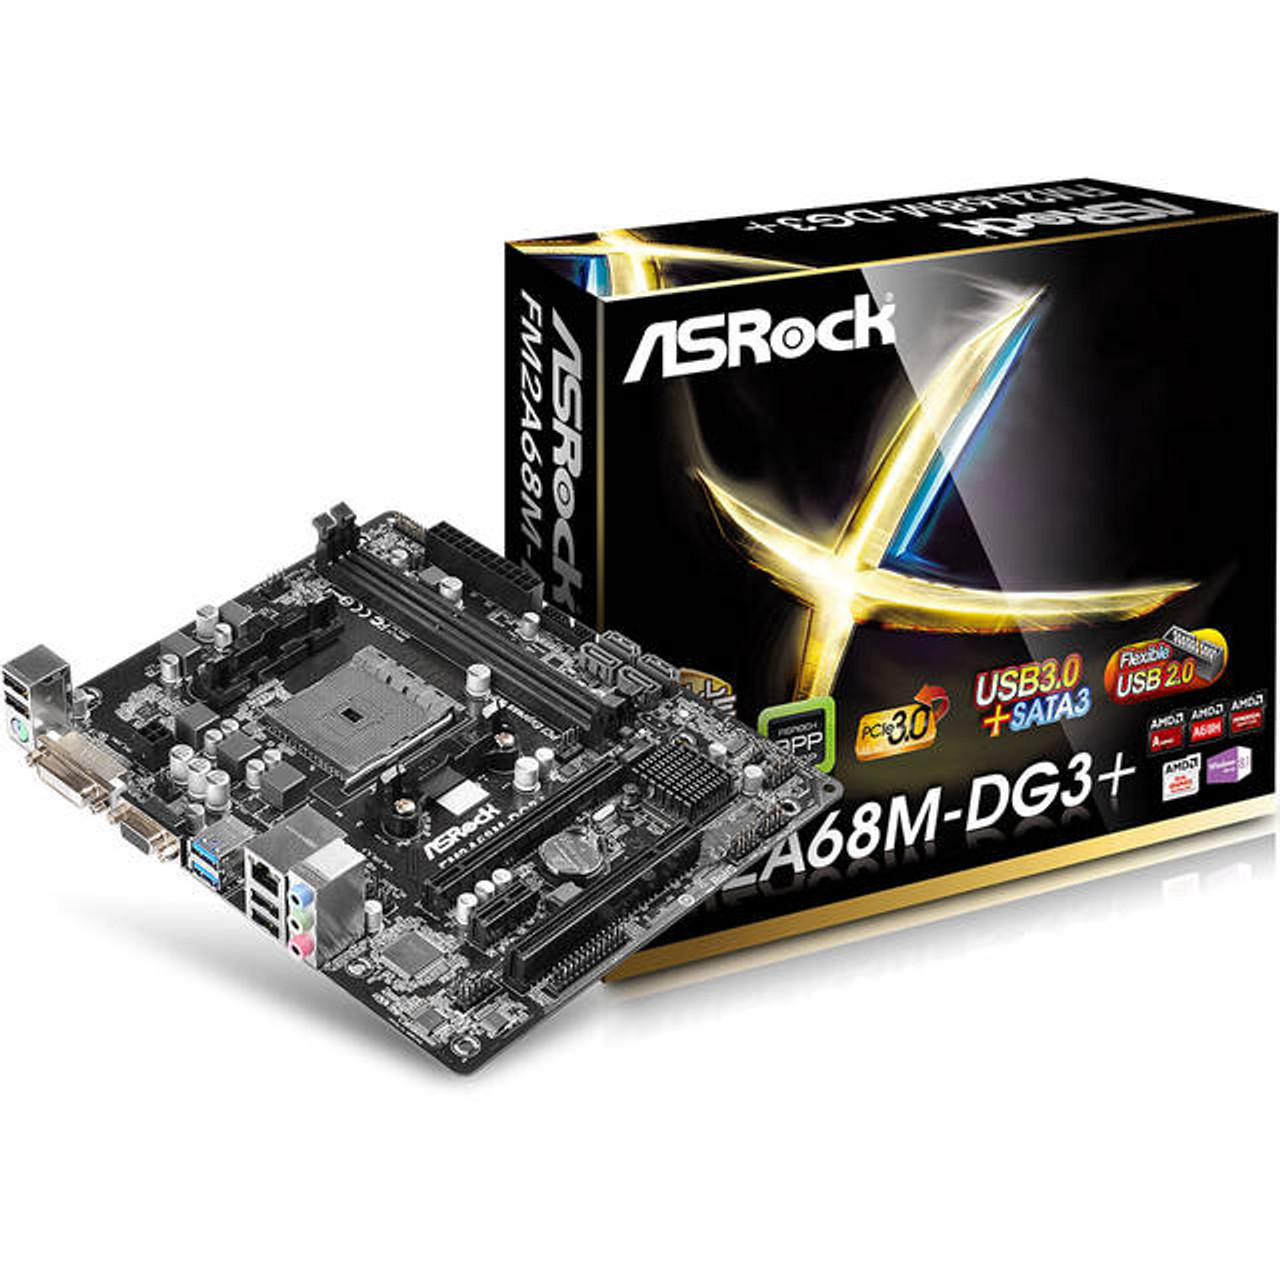 ASRock FM2A68M-DG3+ Socket FM2+/ AMD A68H/ DDR3/ SATA3&USB3.0/ A&GbE/ MicroATX Motherboard